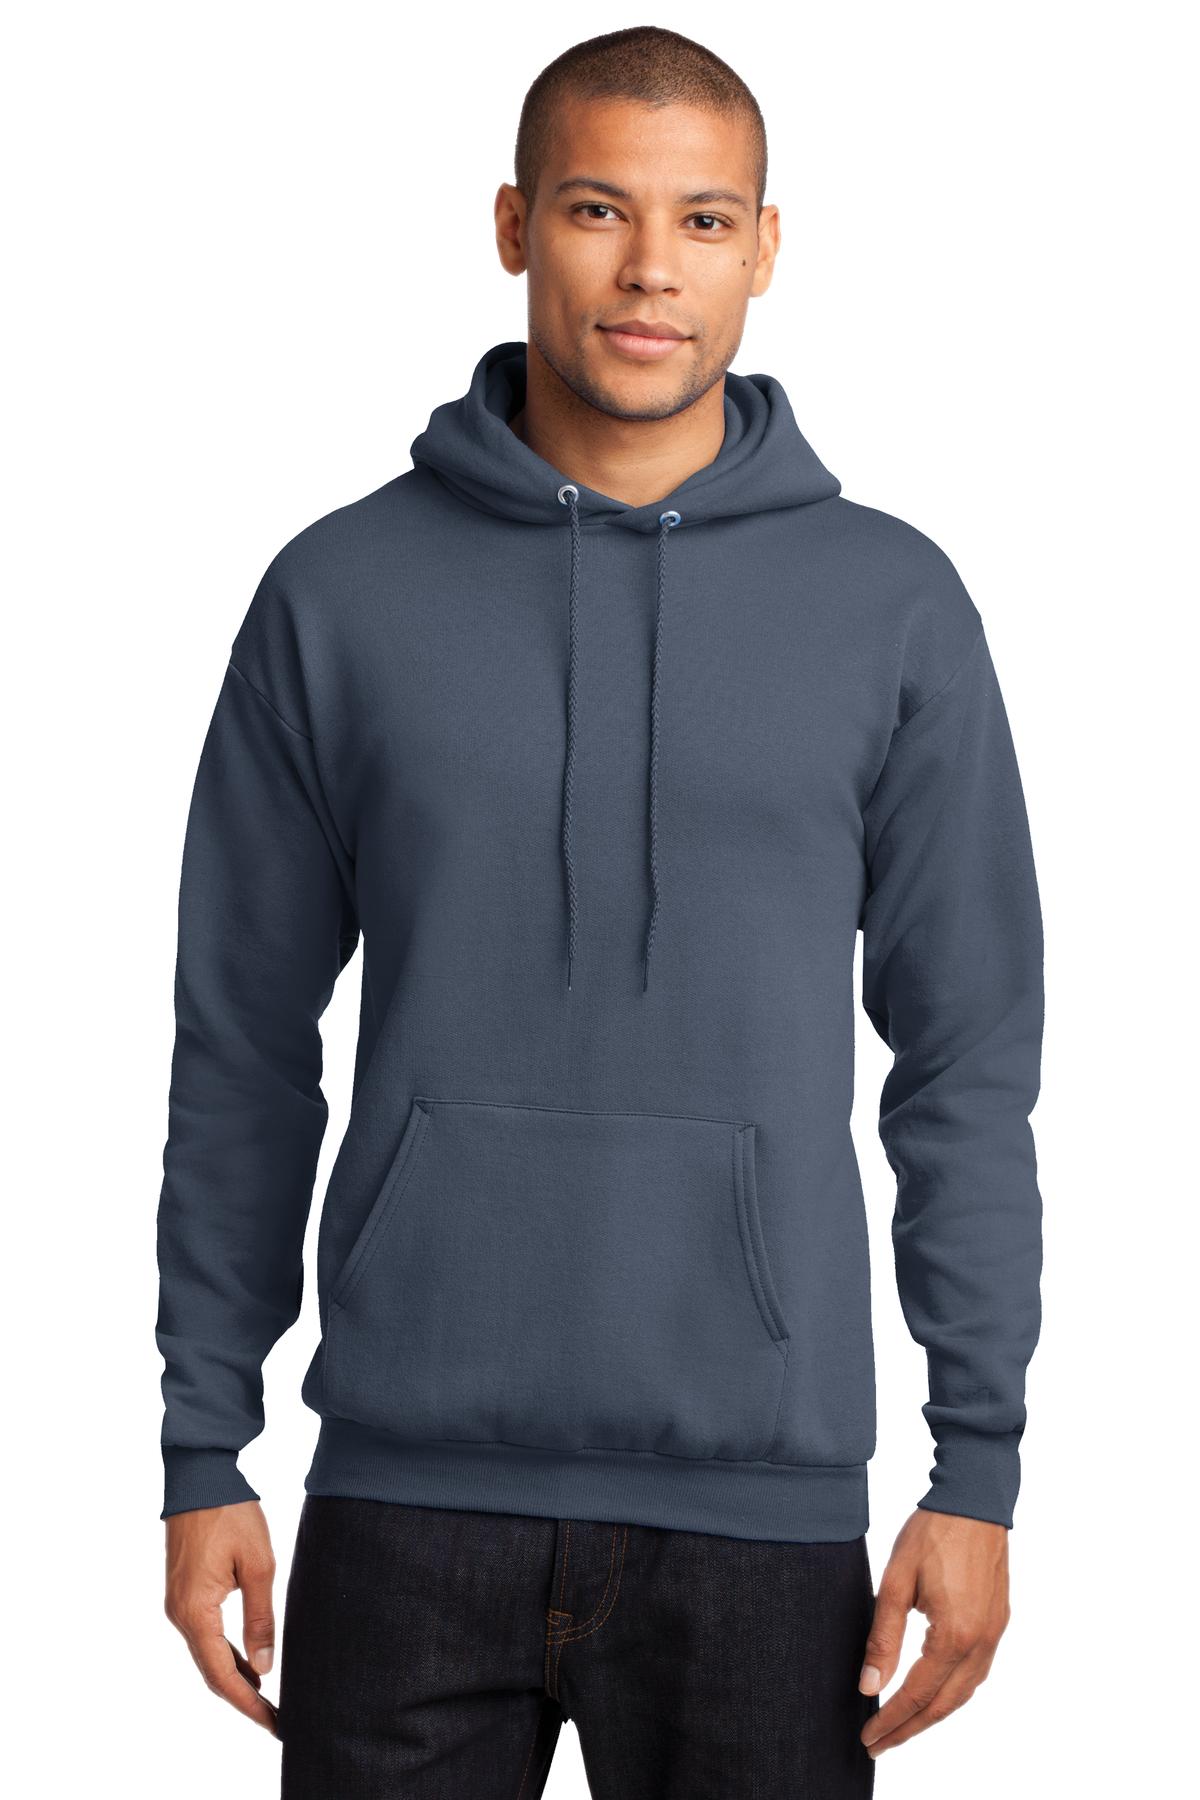 Port & Company - Core Fleece Pullover Hooded Sweatshirt. PC78H - Steel Blue